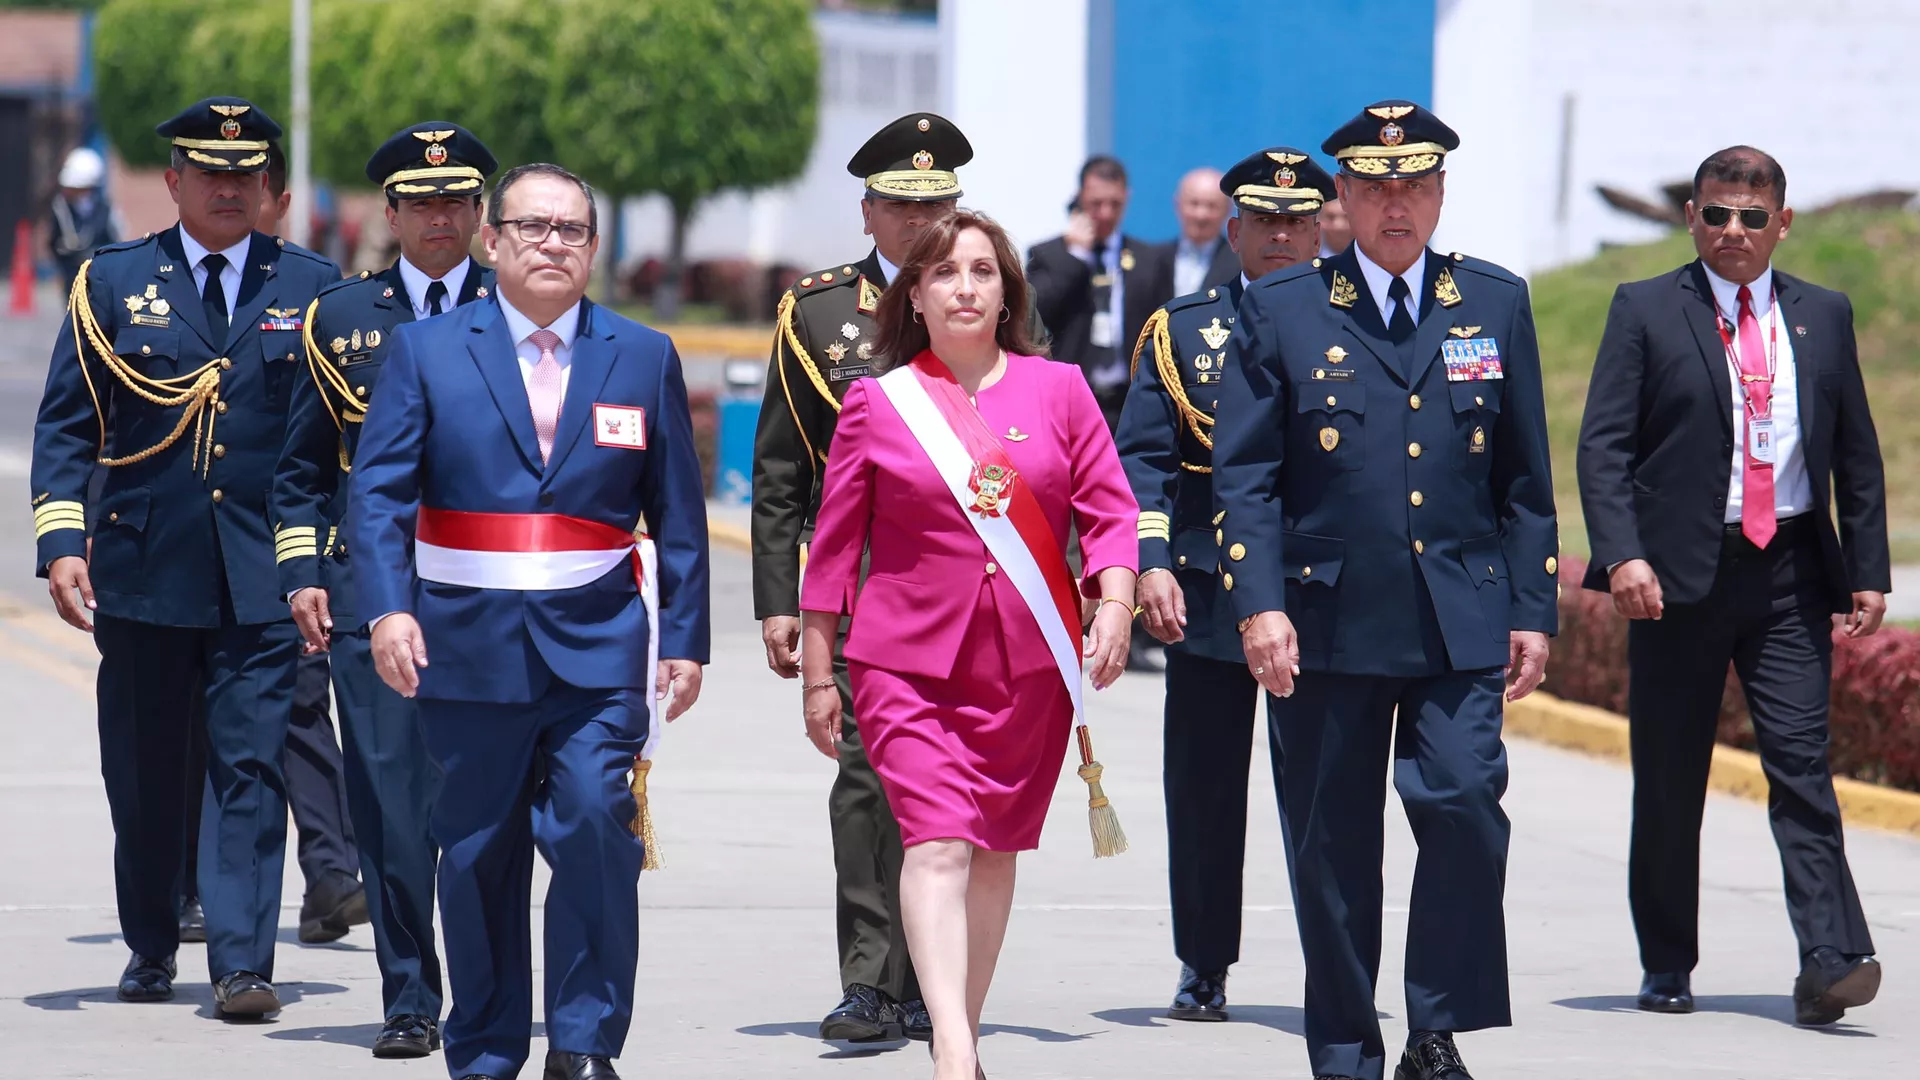  La presidenta peruana Boluarte se niega a dejar el cargo y recurre a los legisladores